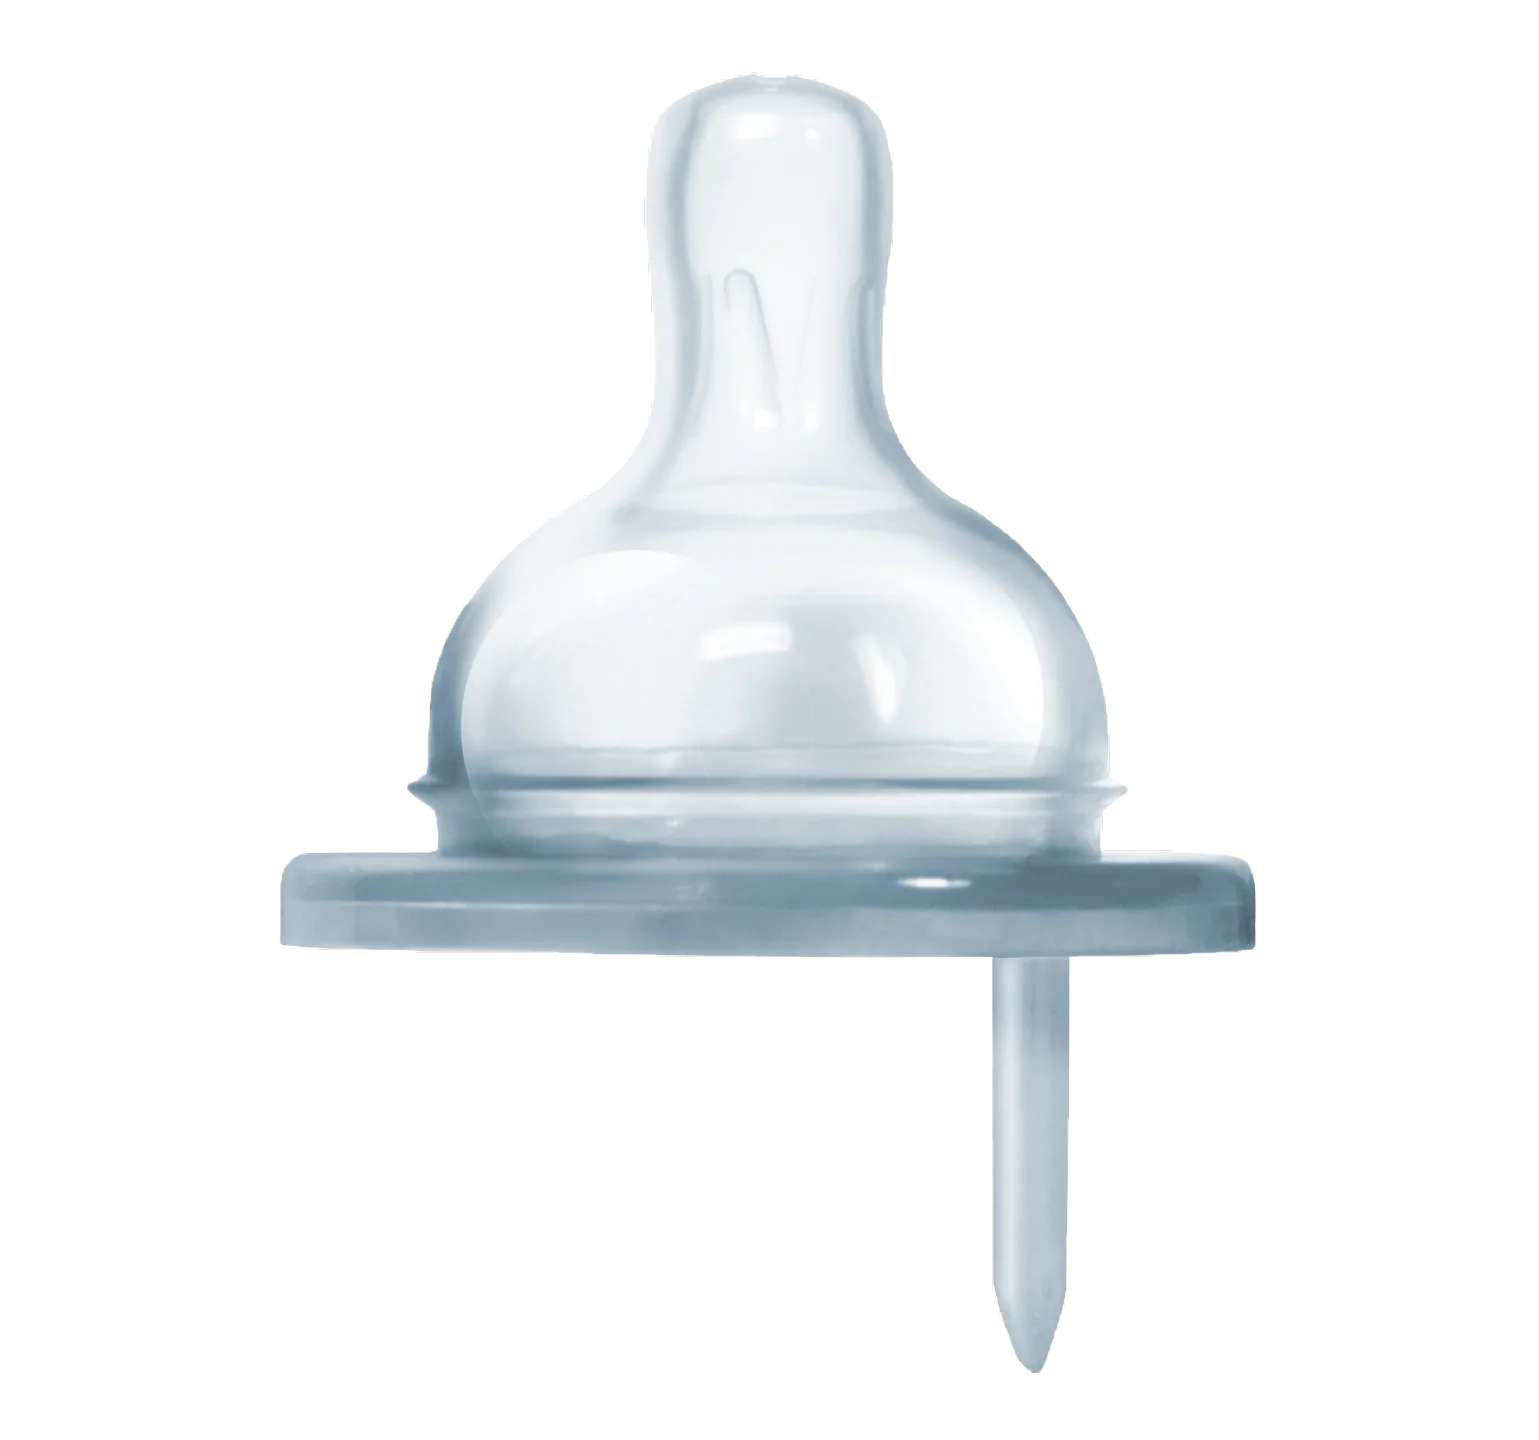 Pura - Insulated Infant bottle 260ml - 3M+ - BambiniJO | Buy Online | Jordan